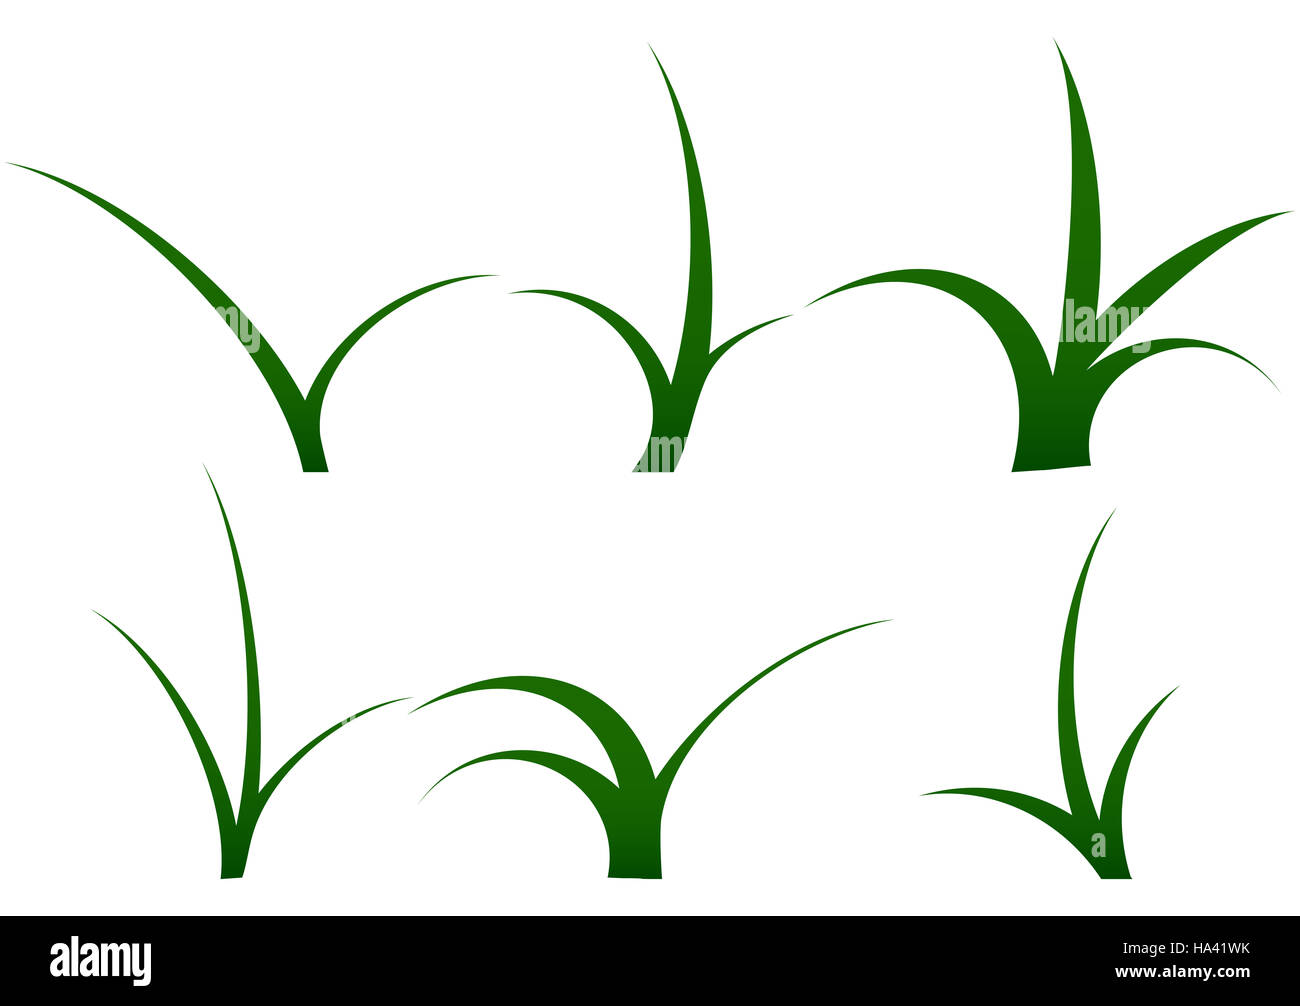 Der Stiel des Grases festgelegt. Grass isoliert und Grass Vektor-illustration Stockfoto